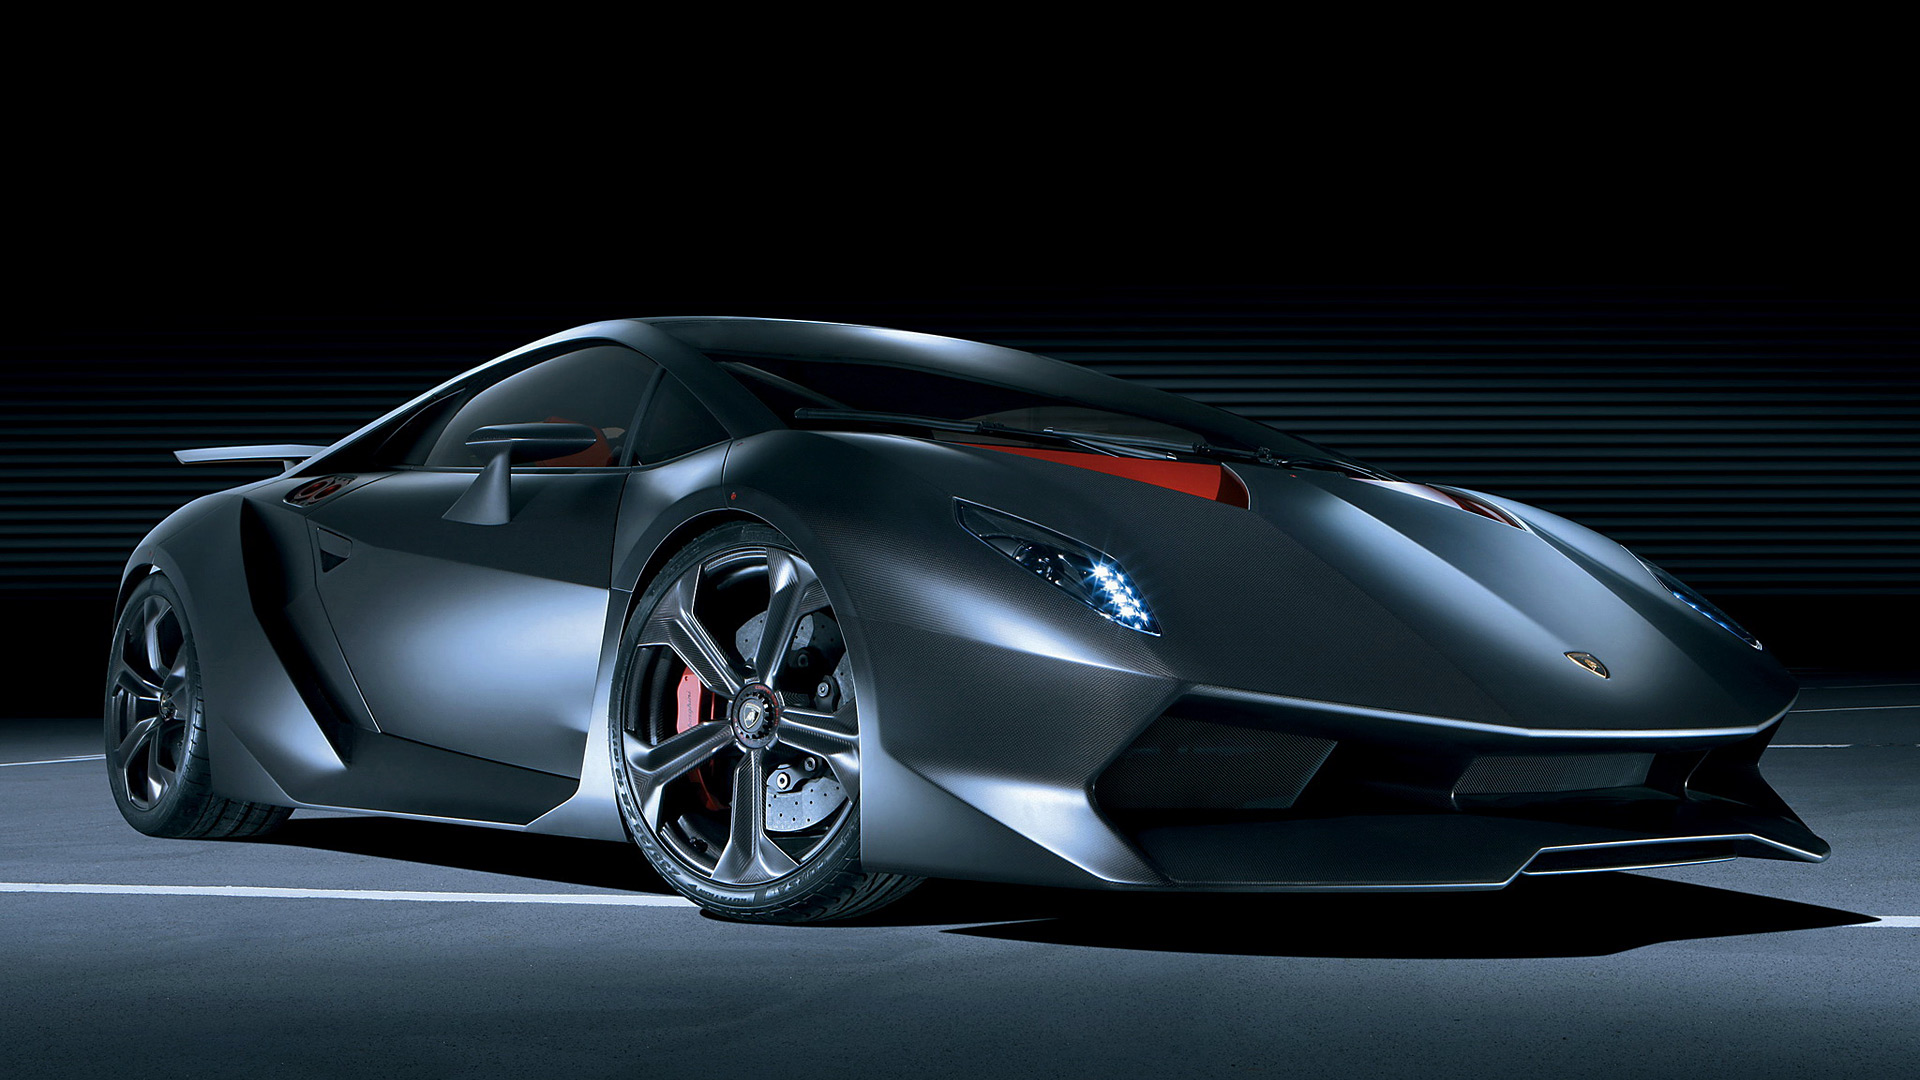 Lamborghini Sesto Elemento Concept Wallpaper HD Image